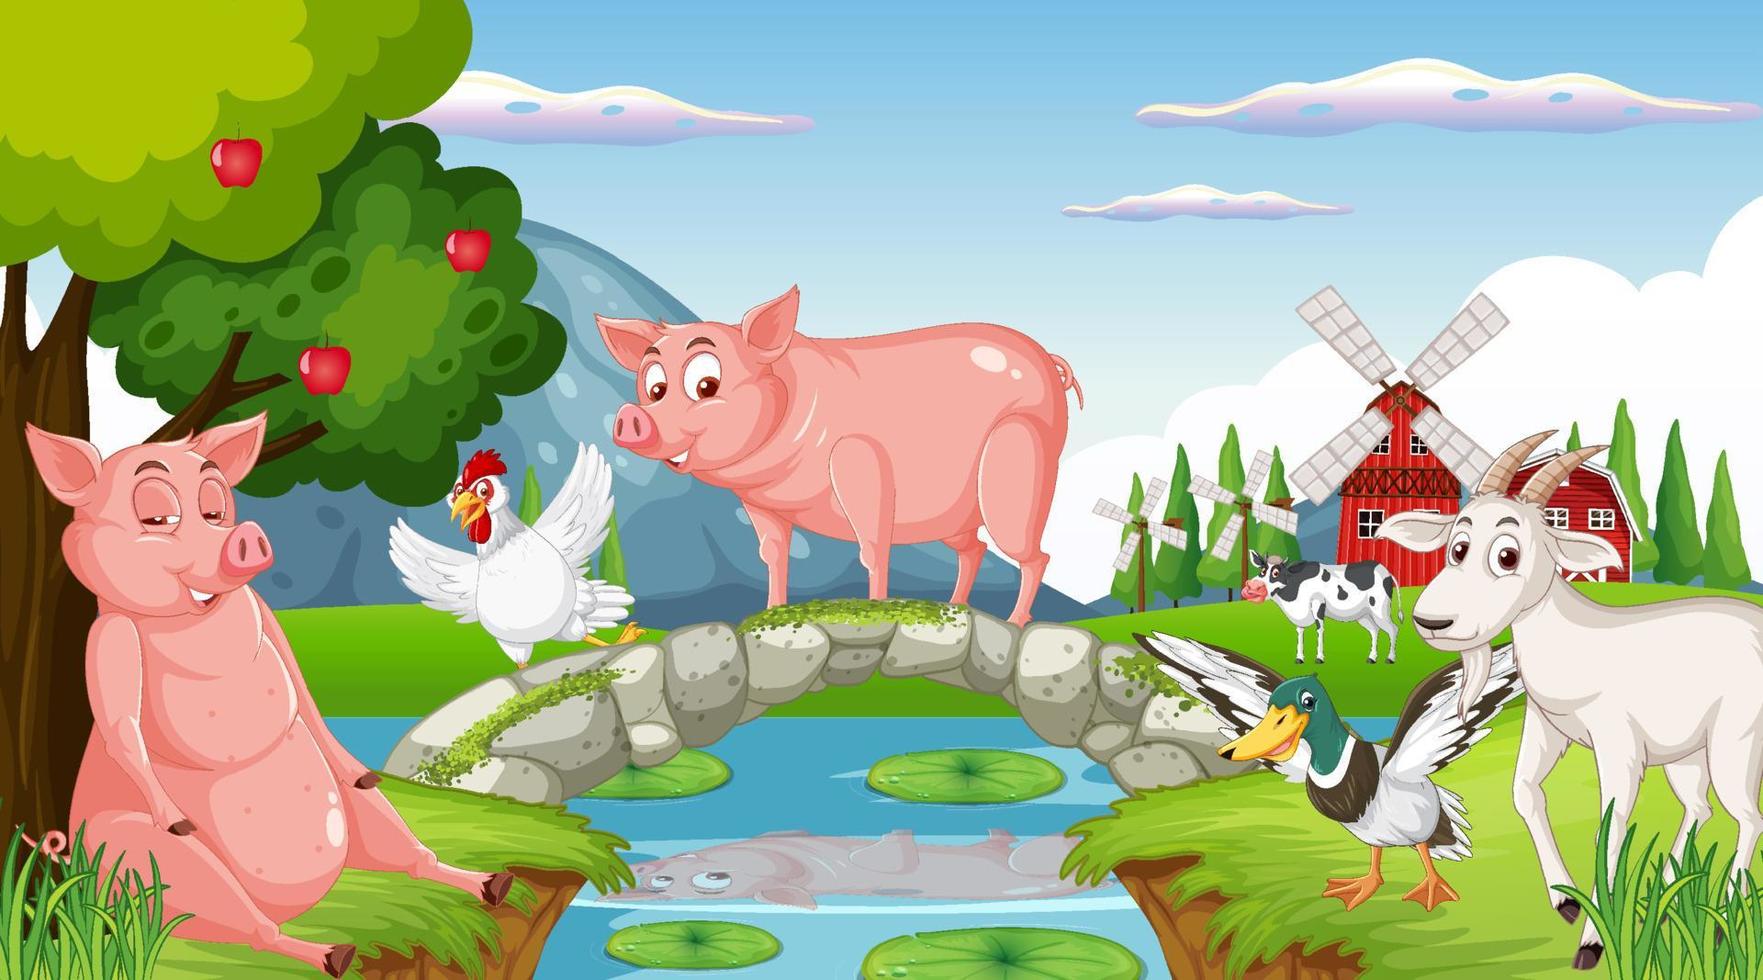 sfondo di fattoria con animali felici vettore